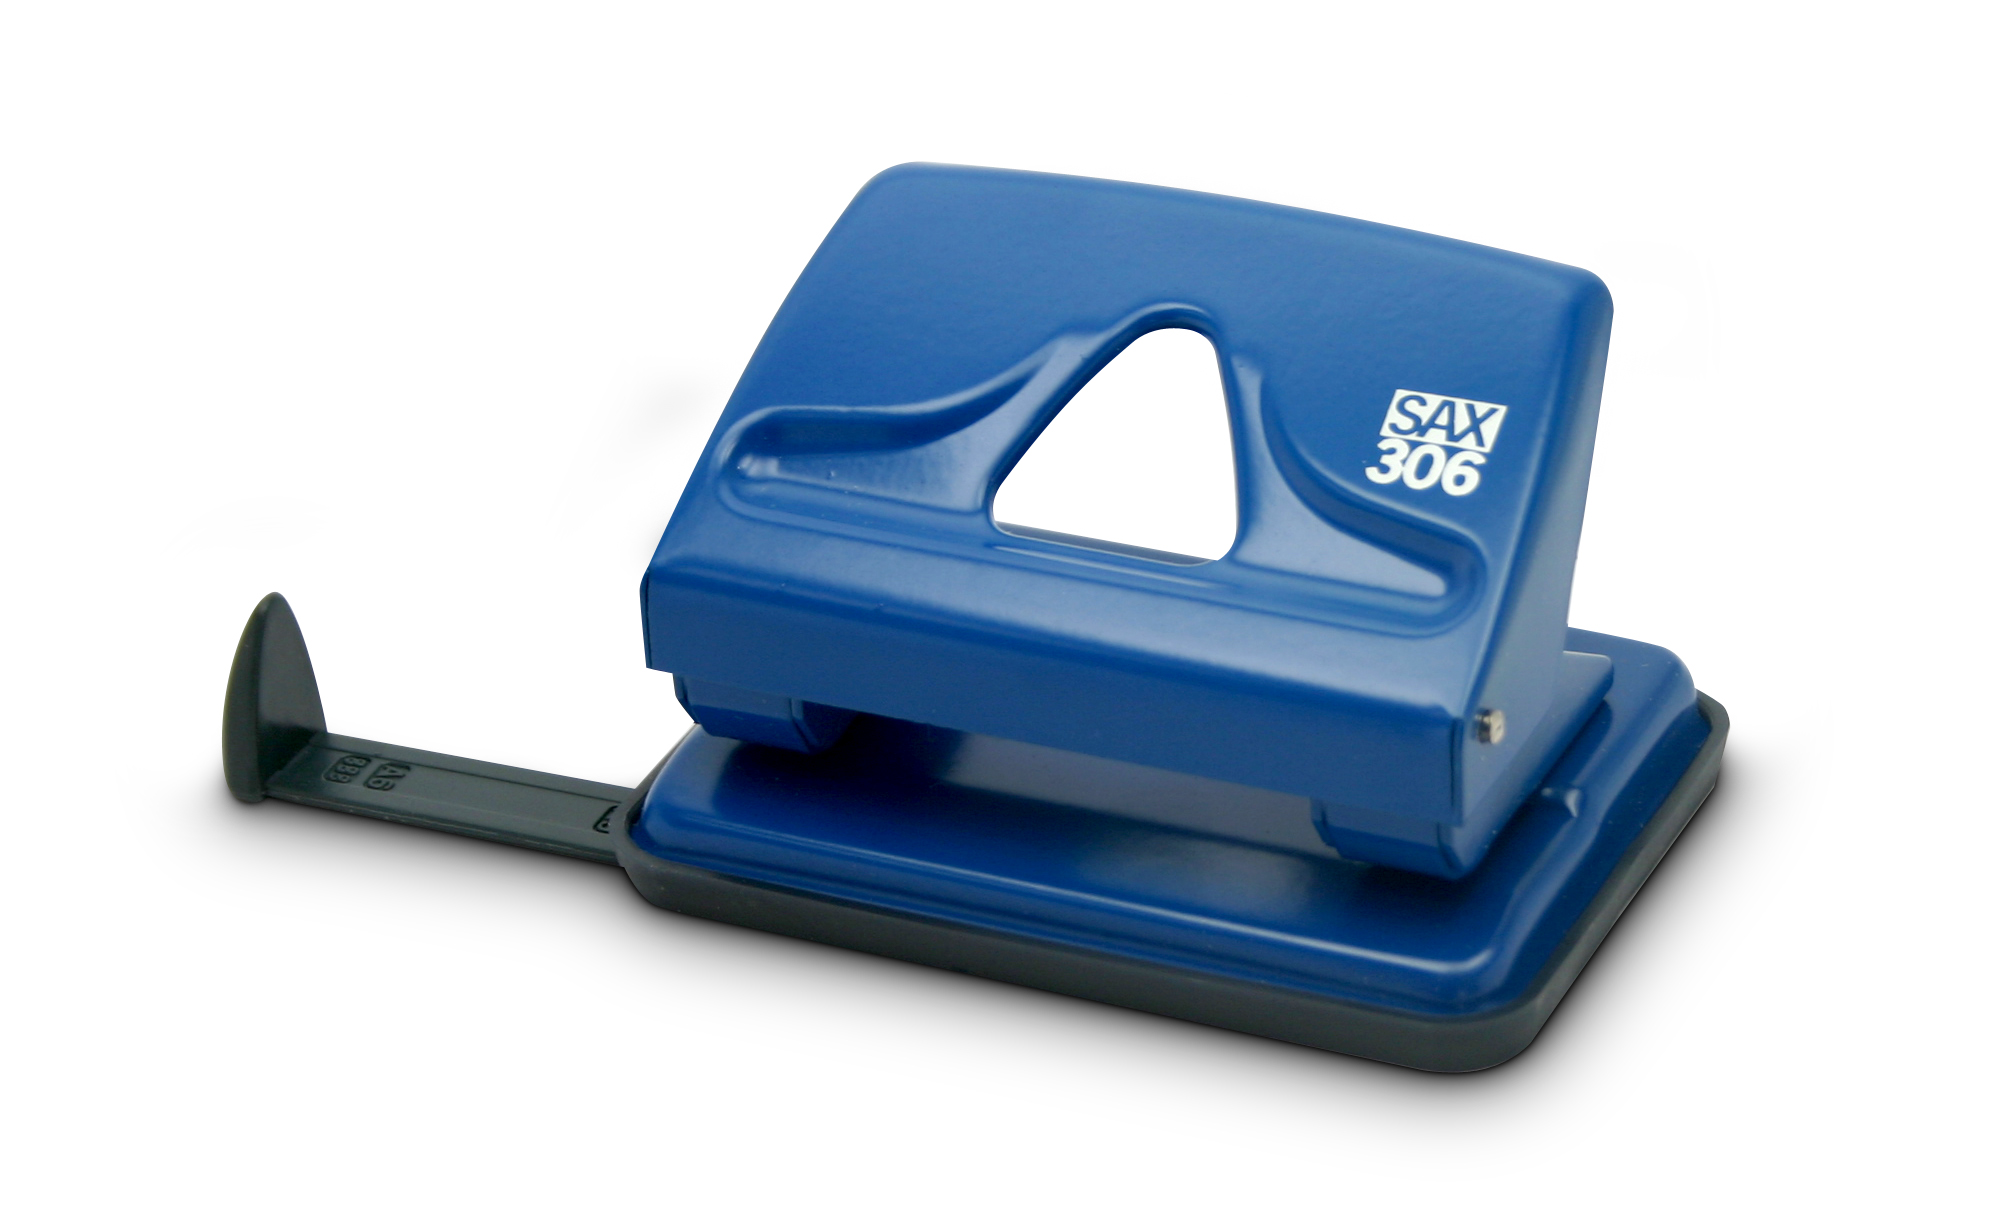 Bušilica za papir Sax 306 - 2 rupe do 20 listova - plava